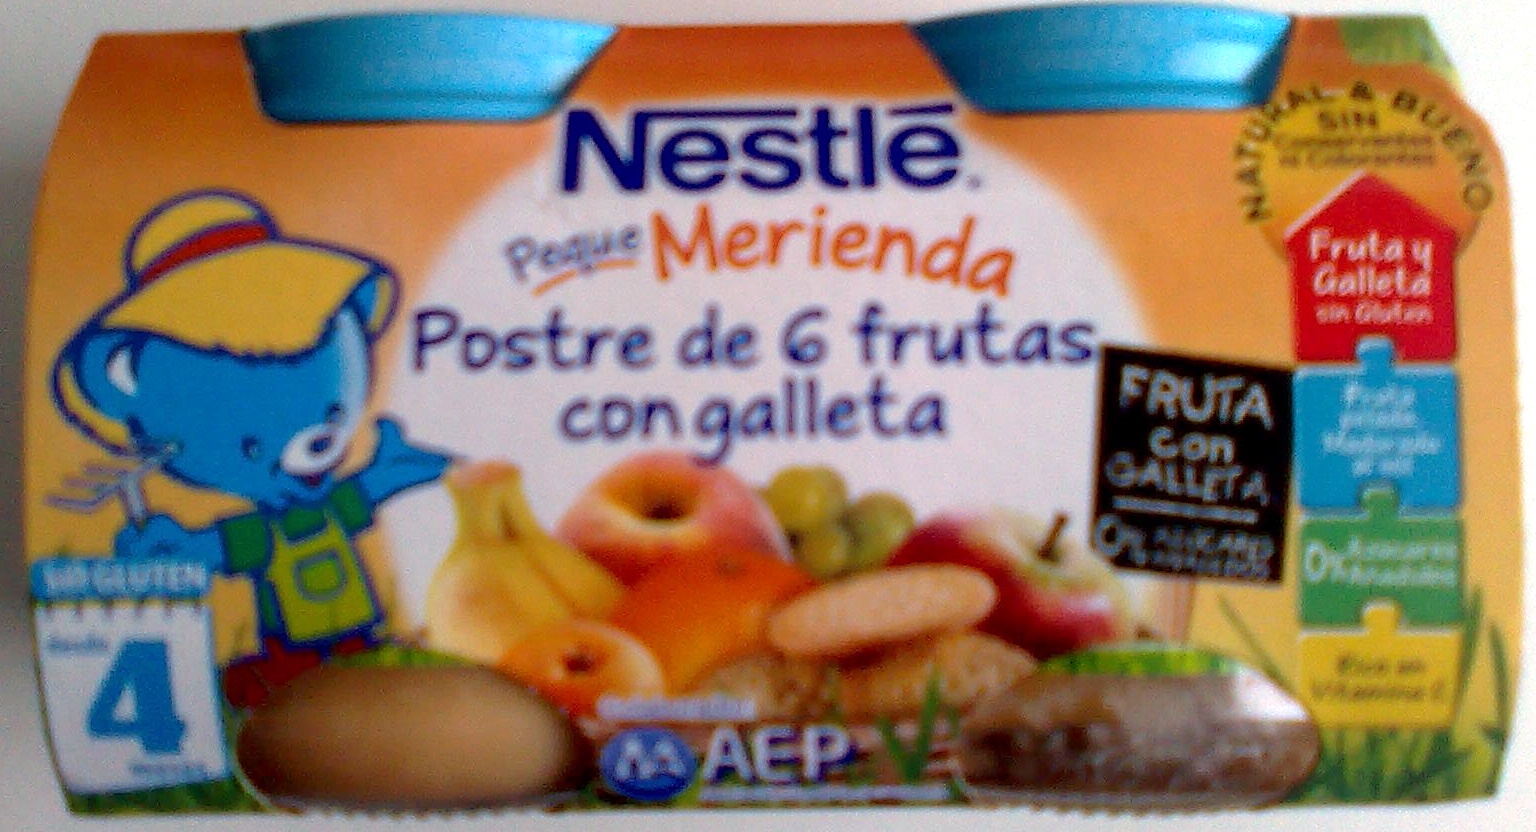 Postre de frutas "Nestlé" 6 frutas con galleta - Producto